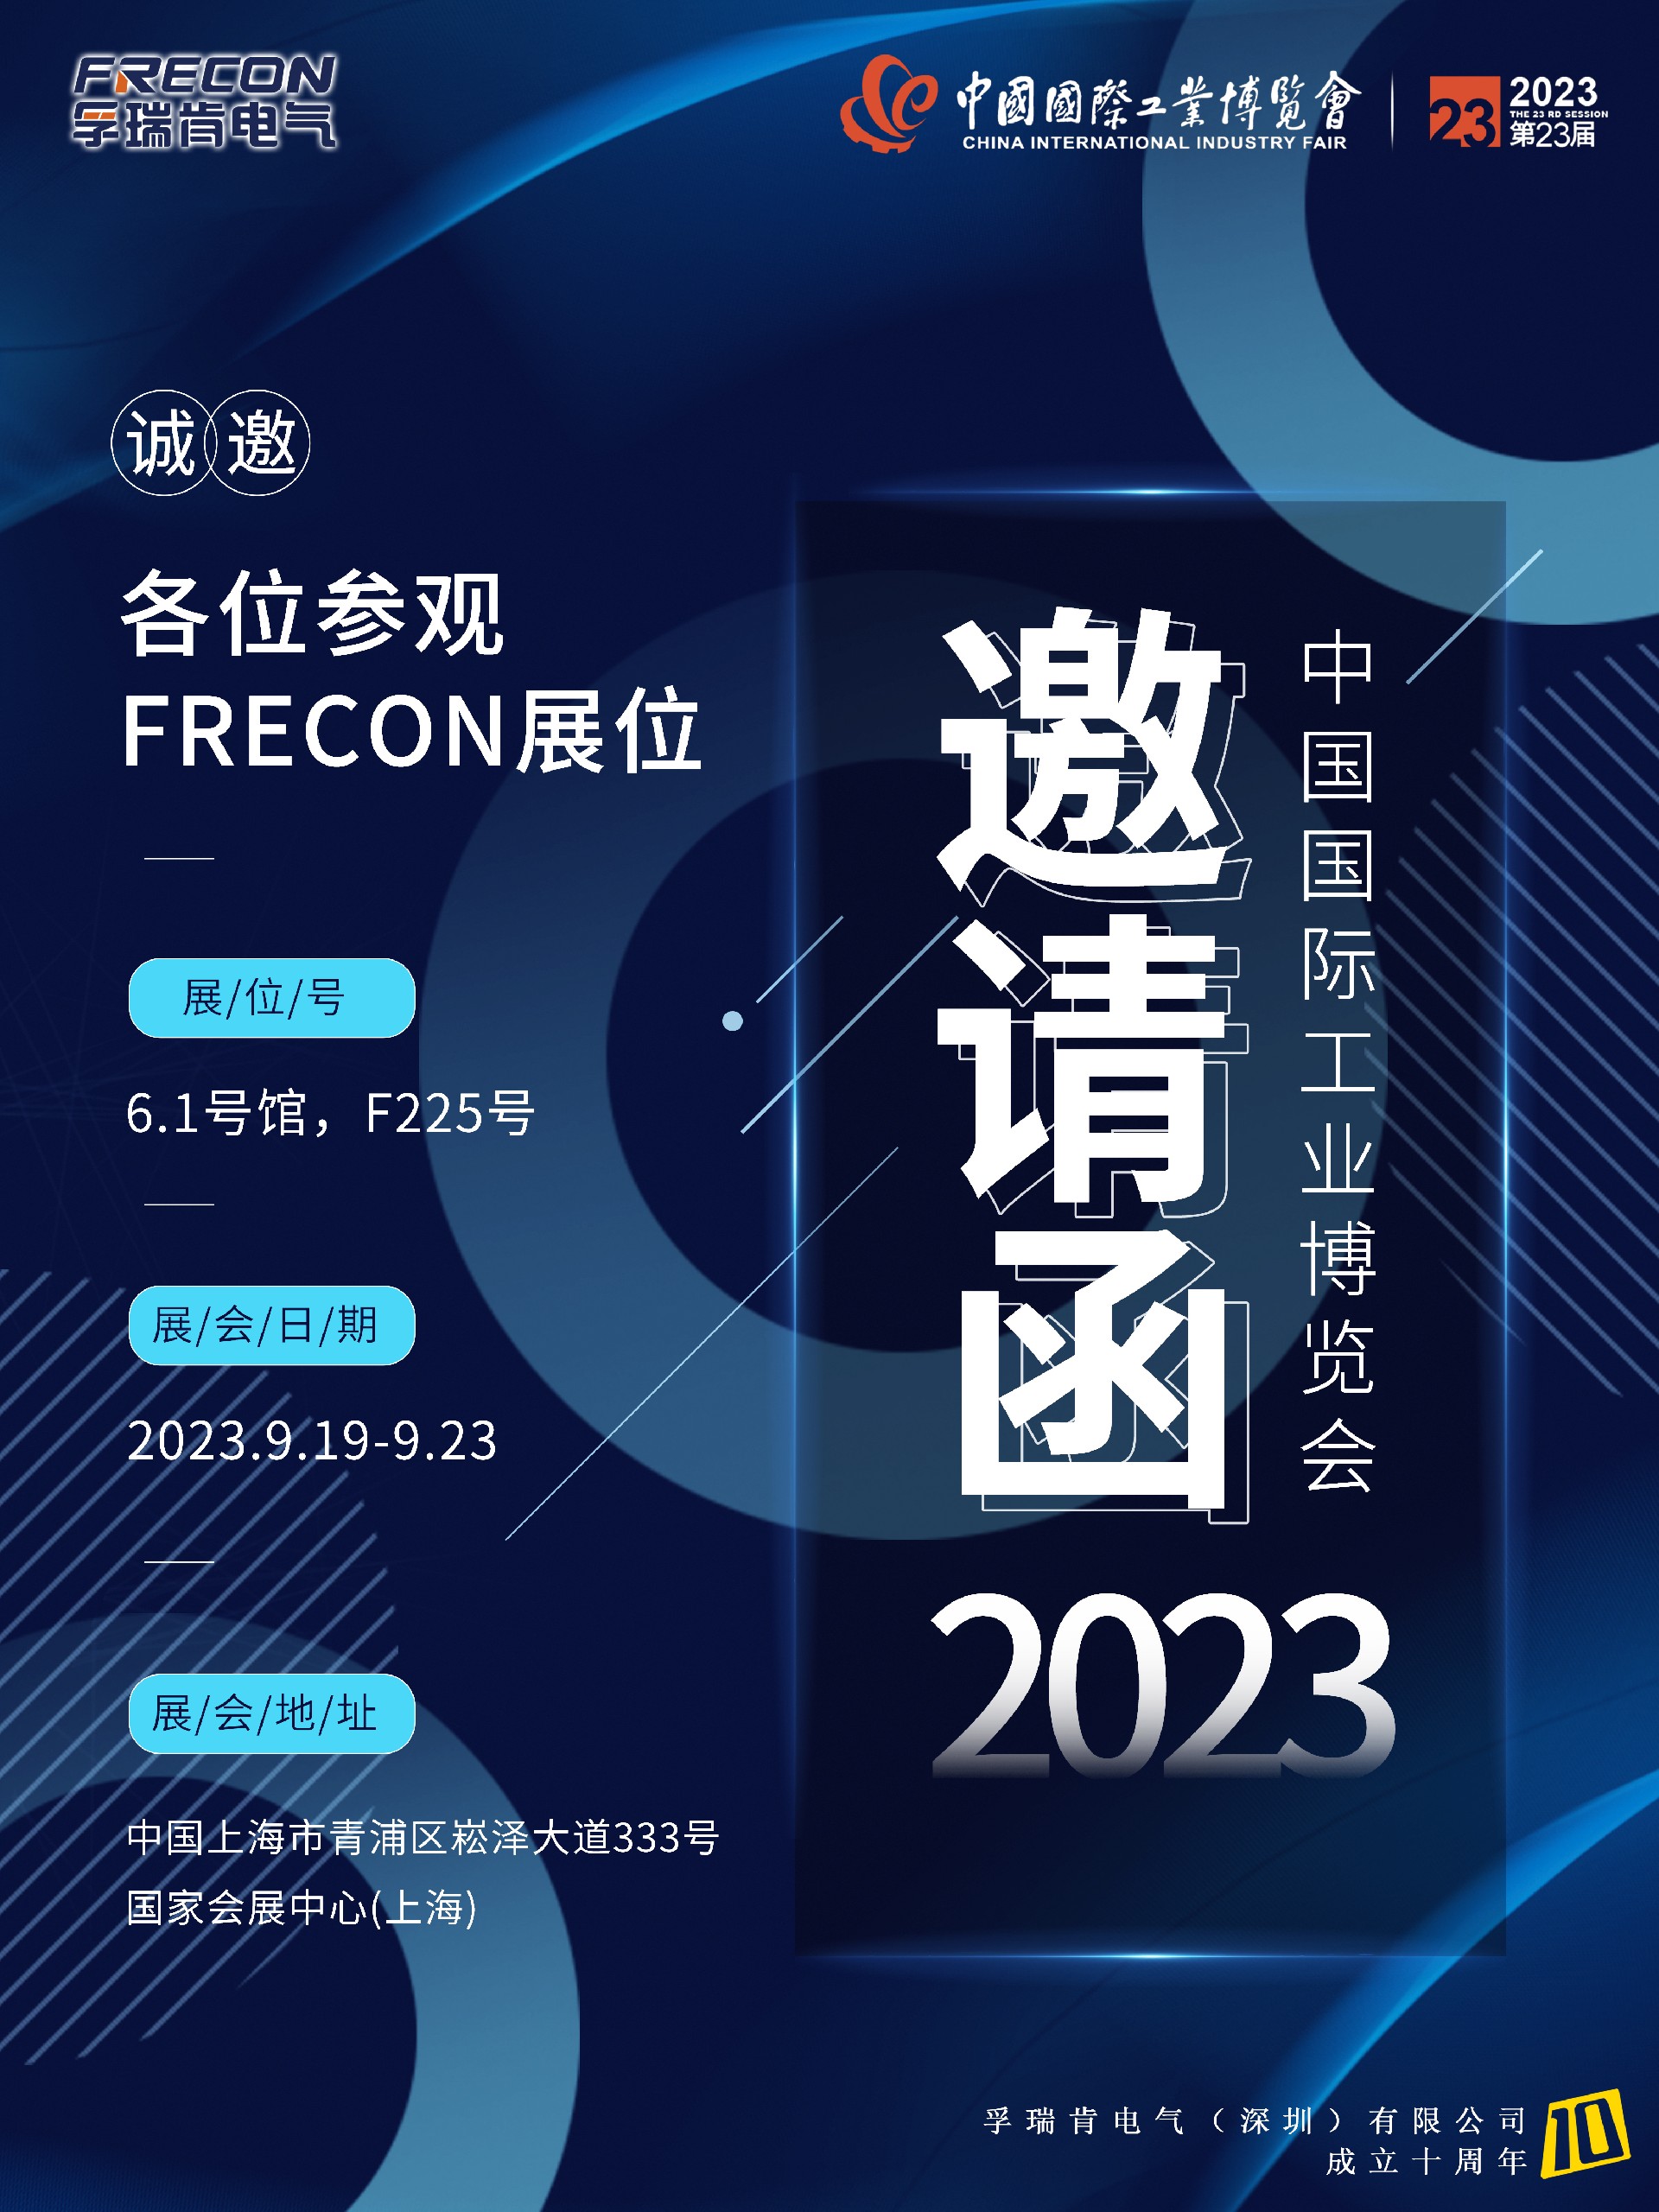 2023年FRECON工博会邀请函(十周年).jpg